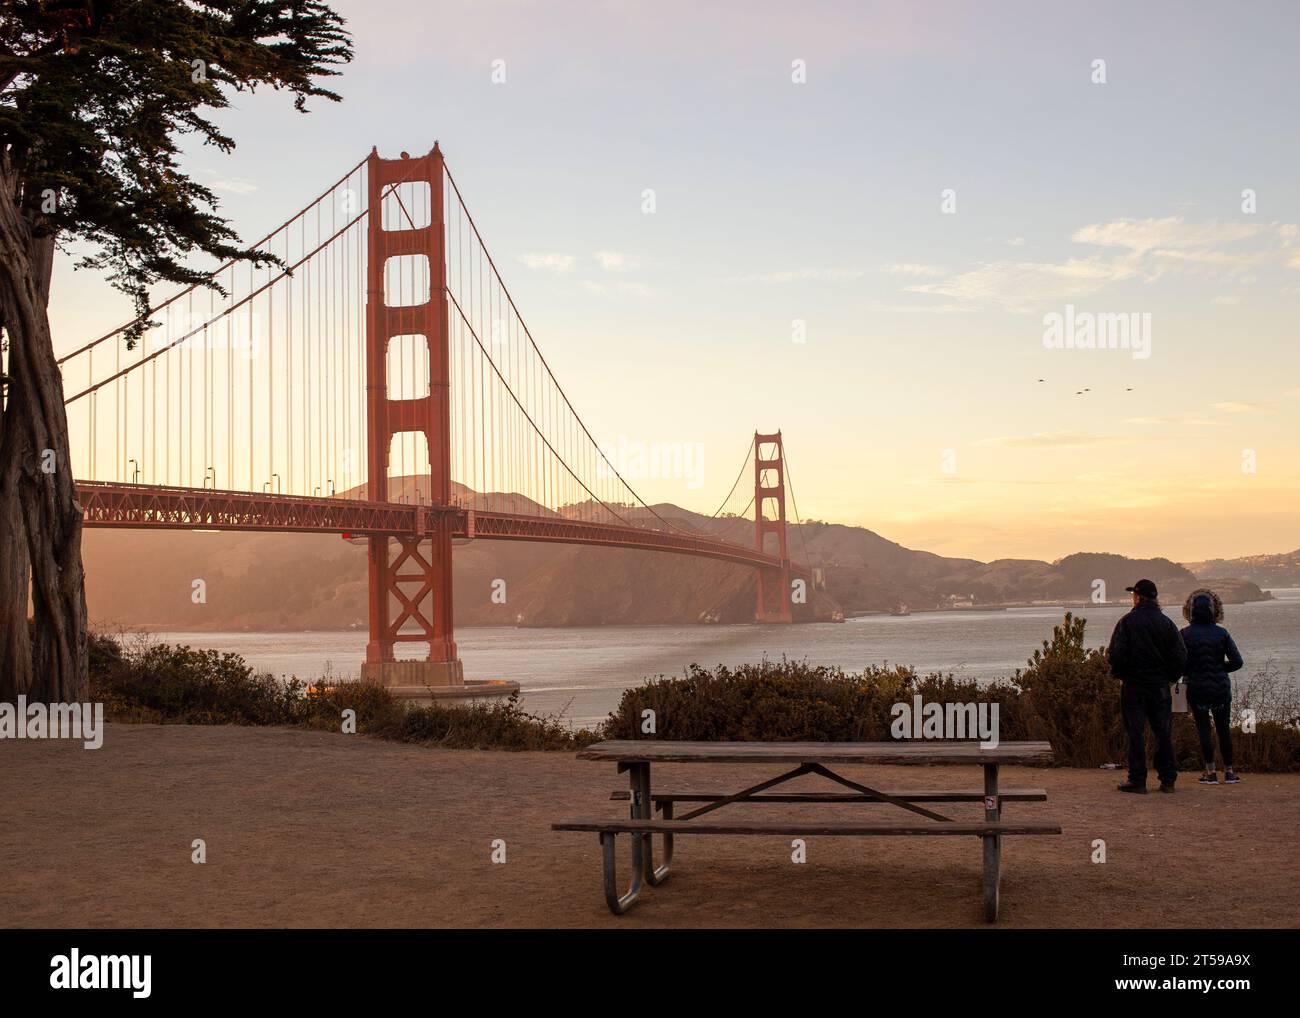 Capturez la beauté fascinante du Golden Gate Bridge, une merveille d'ingénierie qui orne la baie de San Francisco. Embrassez l'allure enchanteresse de ce b Banque D'Images